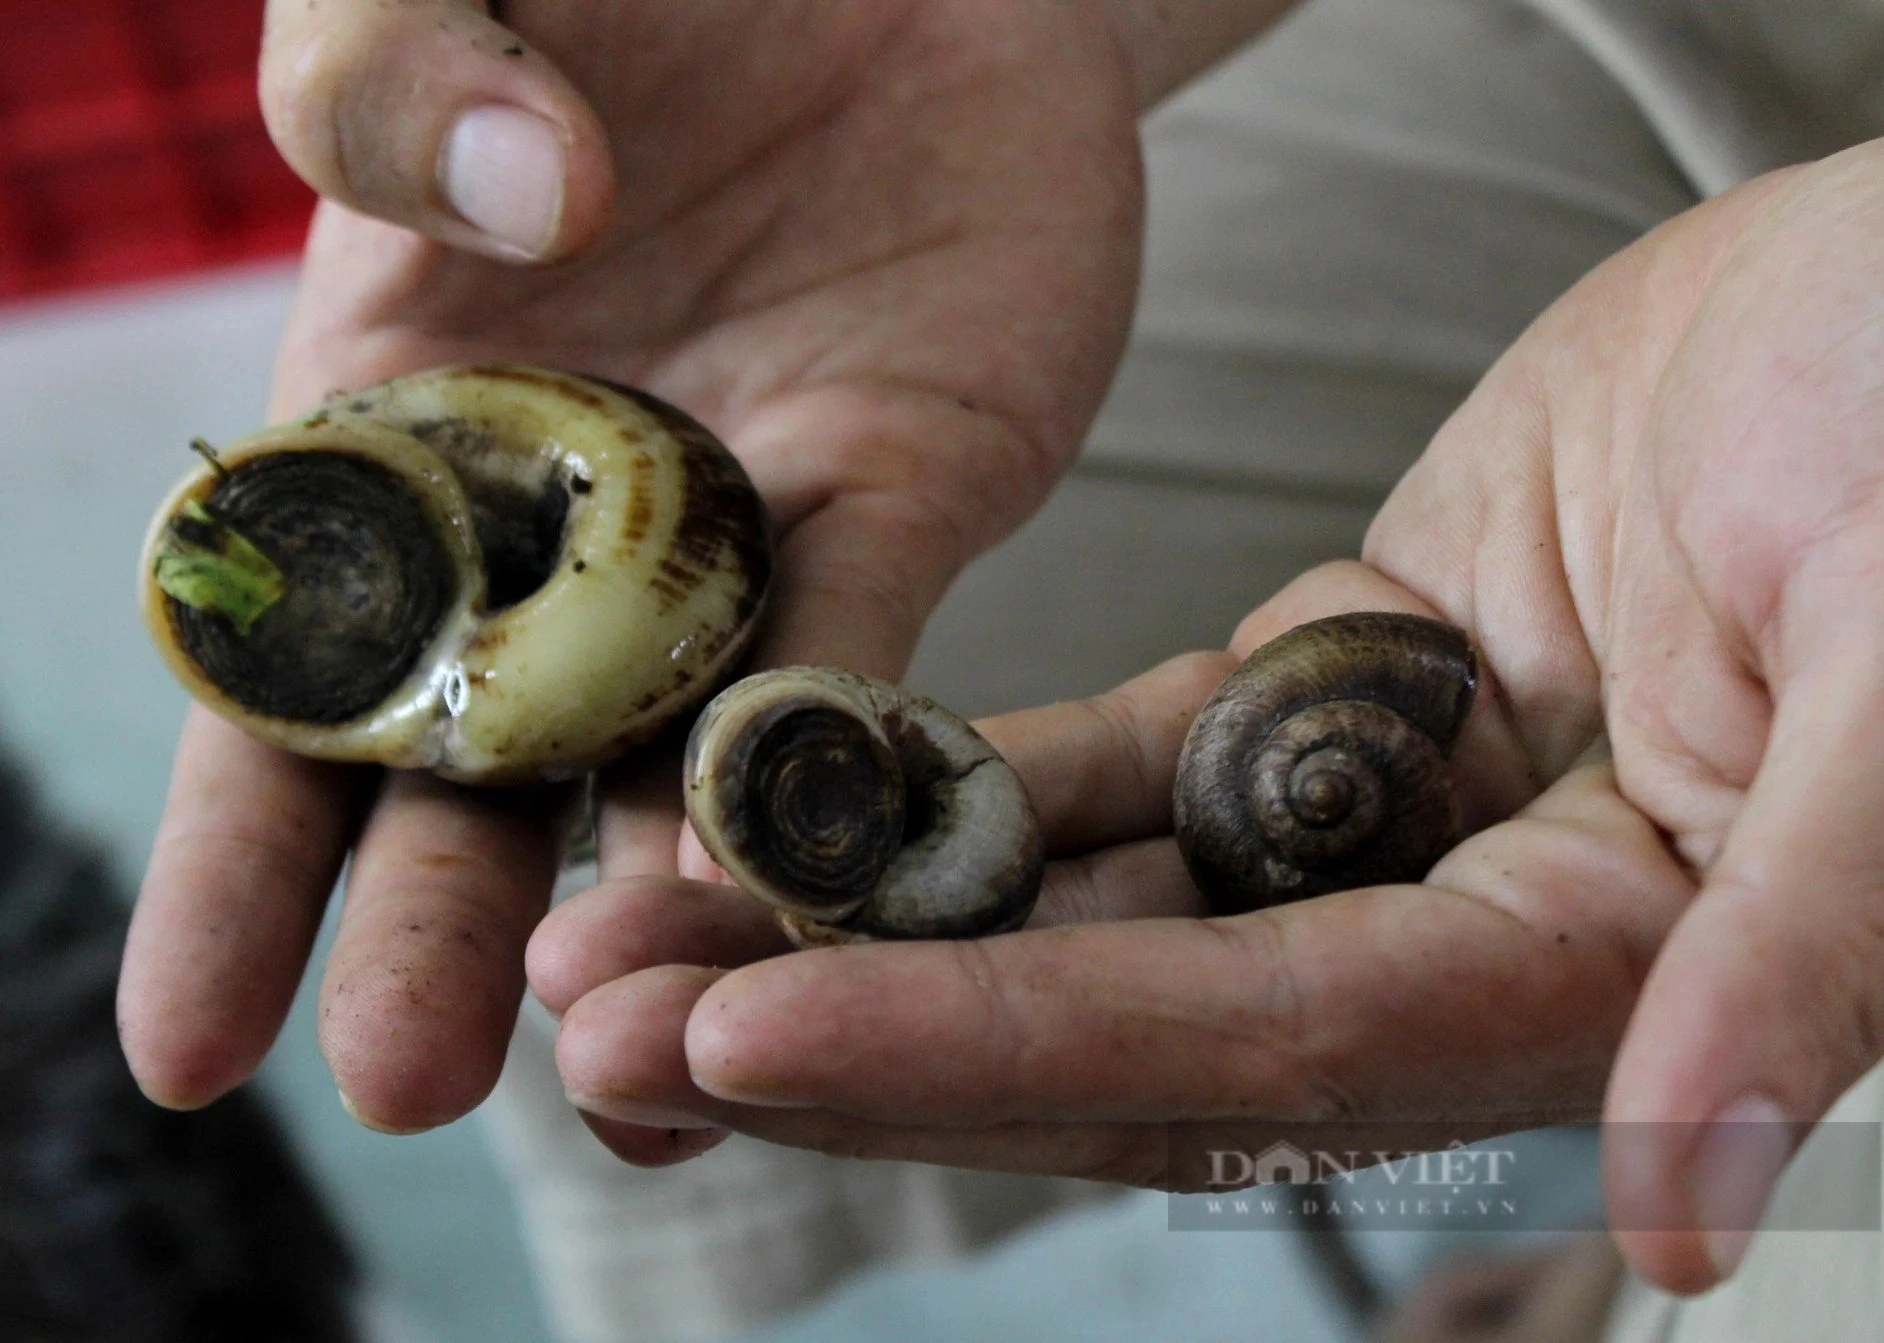 Nuôi loài ốc đặc sản thơm mùi thuốc Nam, bán giá 400.000 đồng/kg, anh nông dân Tây Ninh hốt bạc